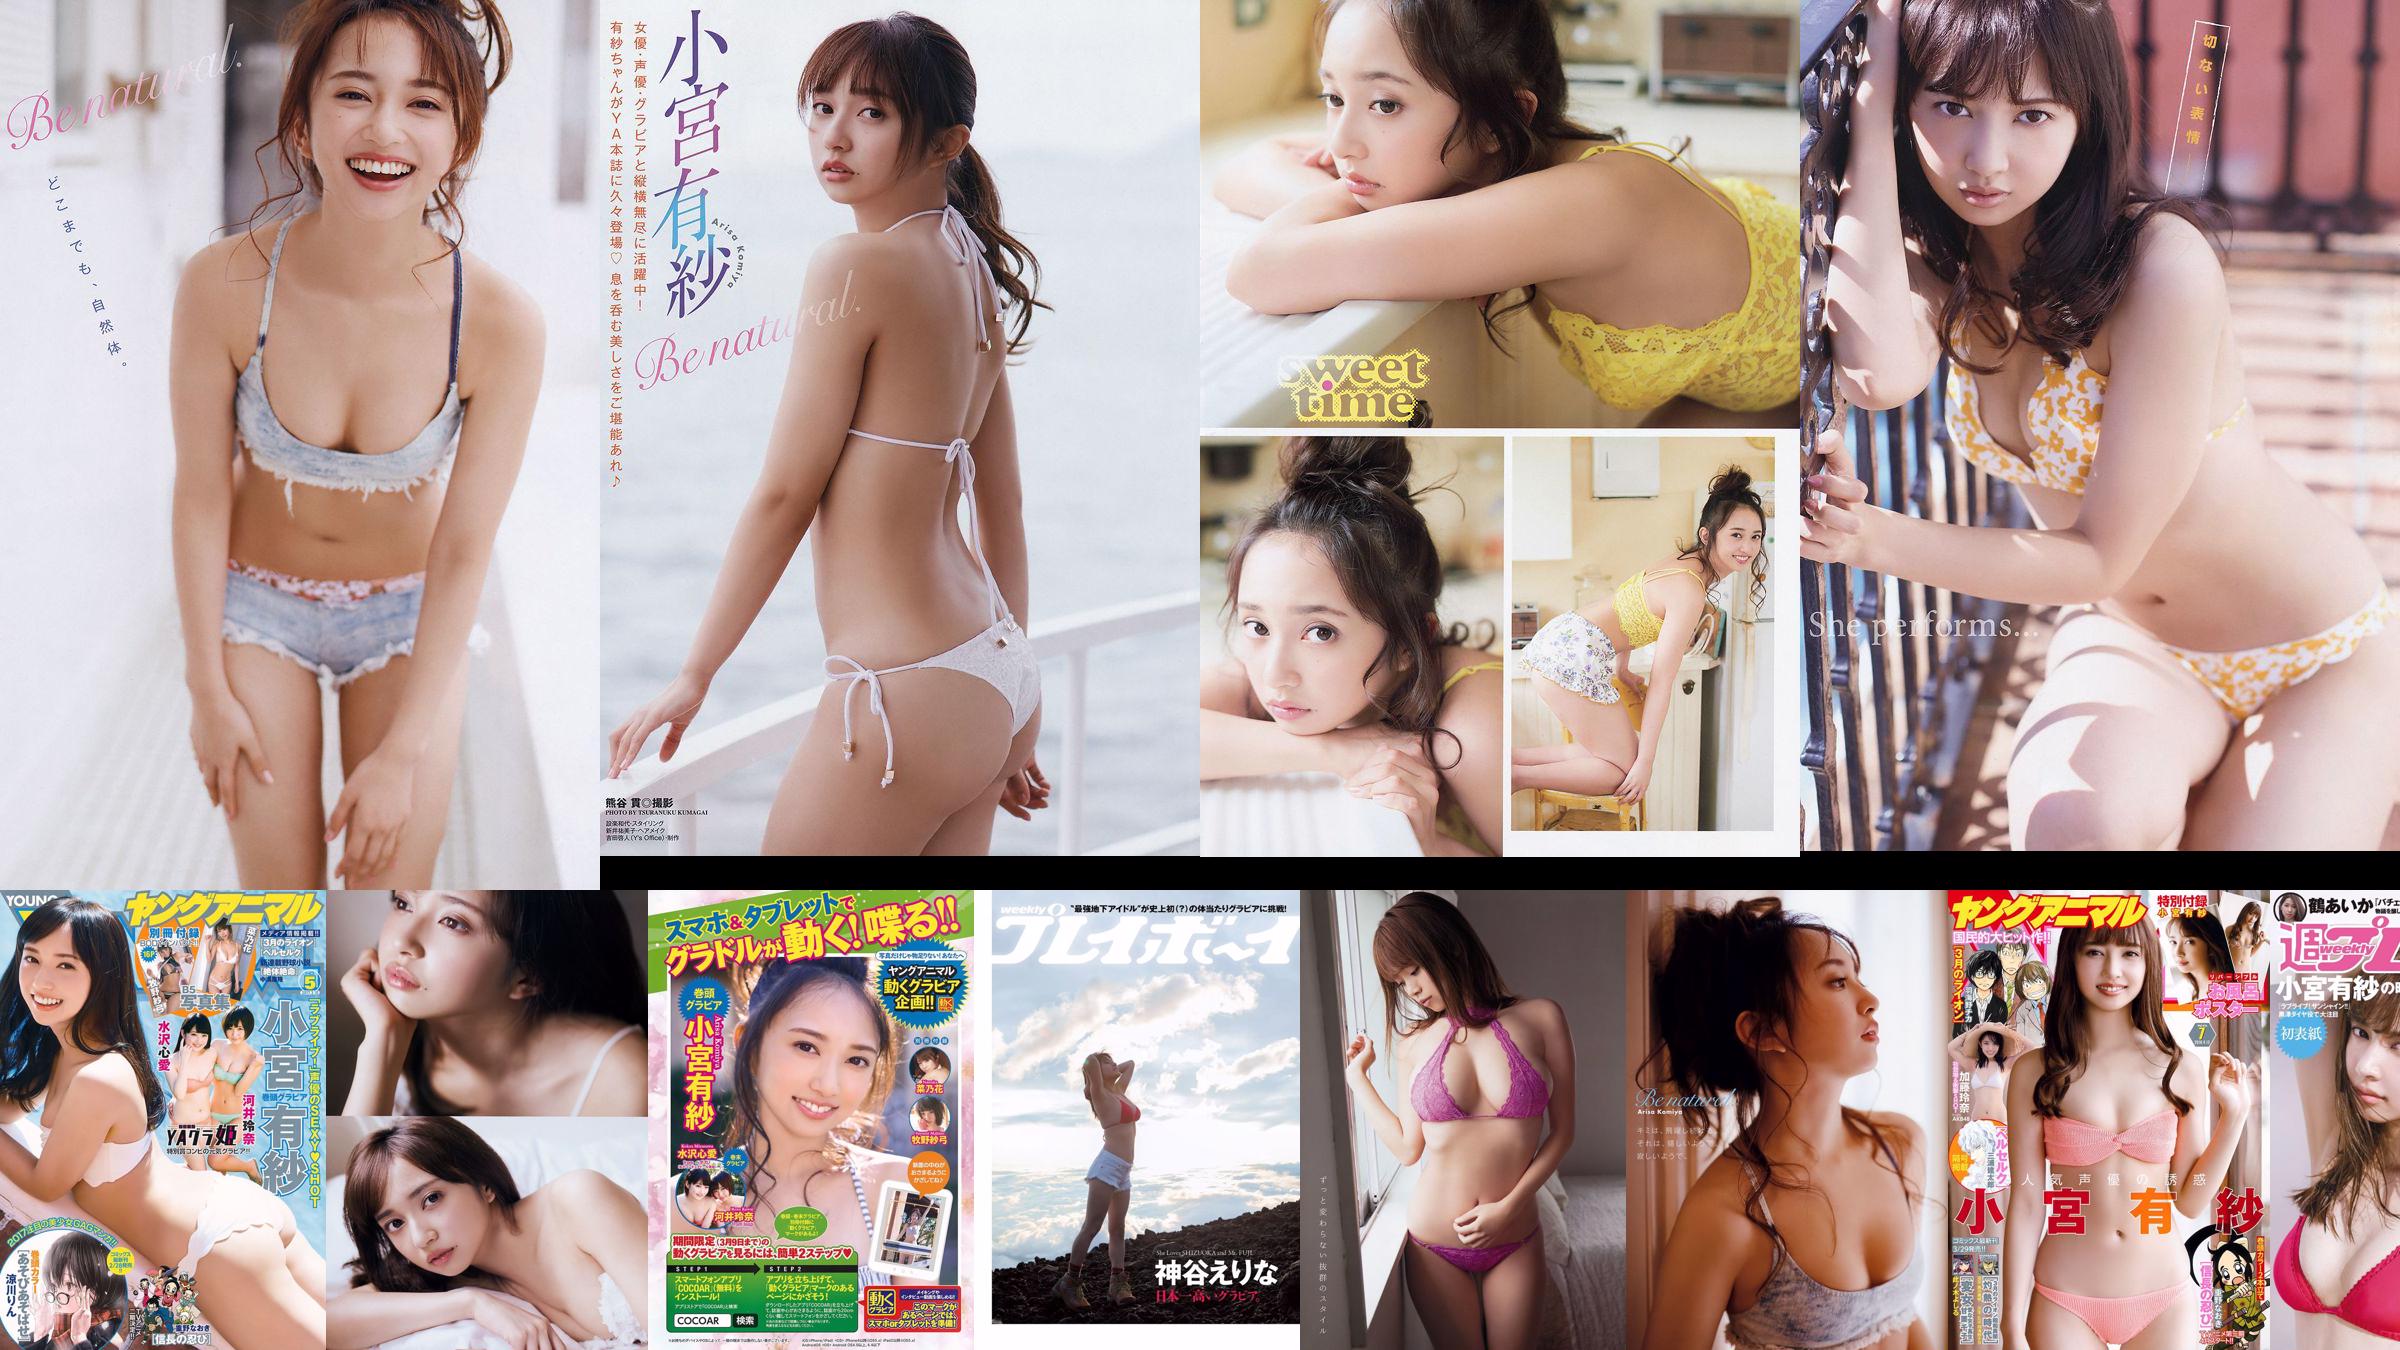 Arisa Komiya Aya Asahina Yuuna Suzuki Miwako Kakei STU48 Honoka Mai Hakase Riho Yoshioka [Playboy semanal] 2018 No.07 Foto Miwako No.408b9e Página 1